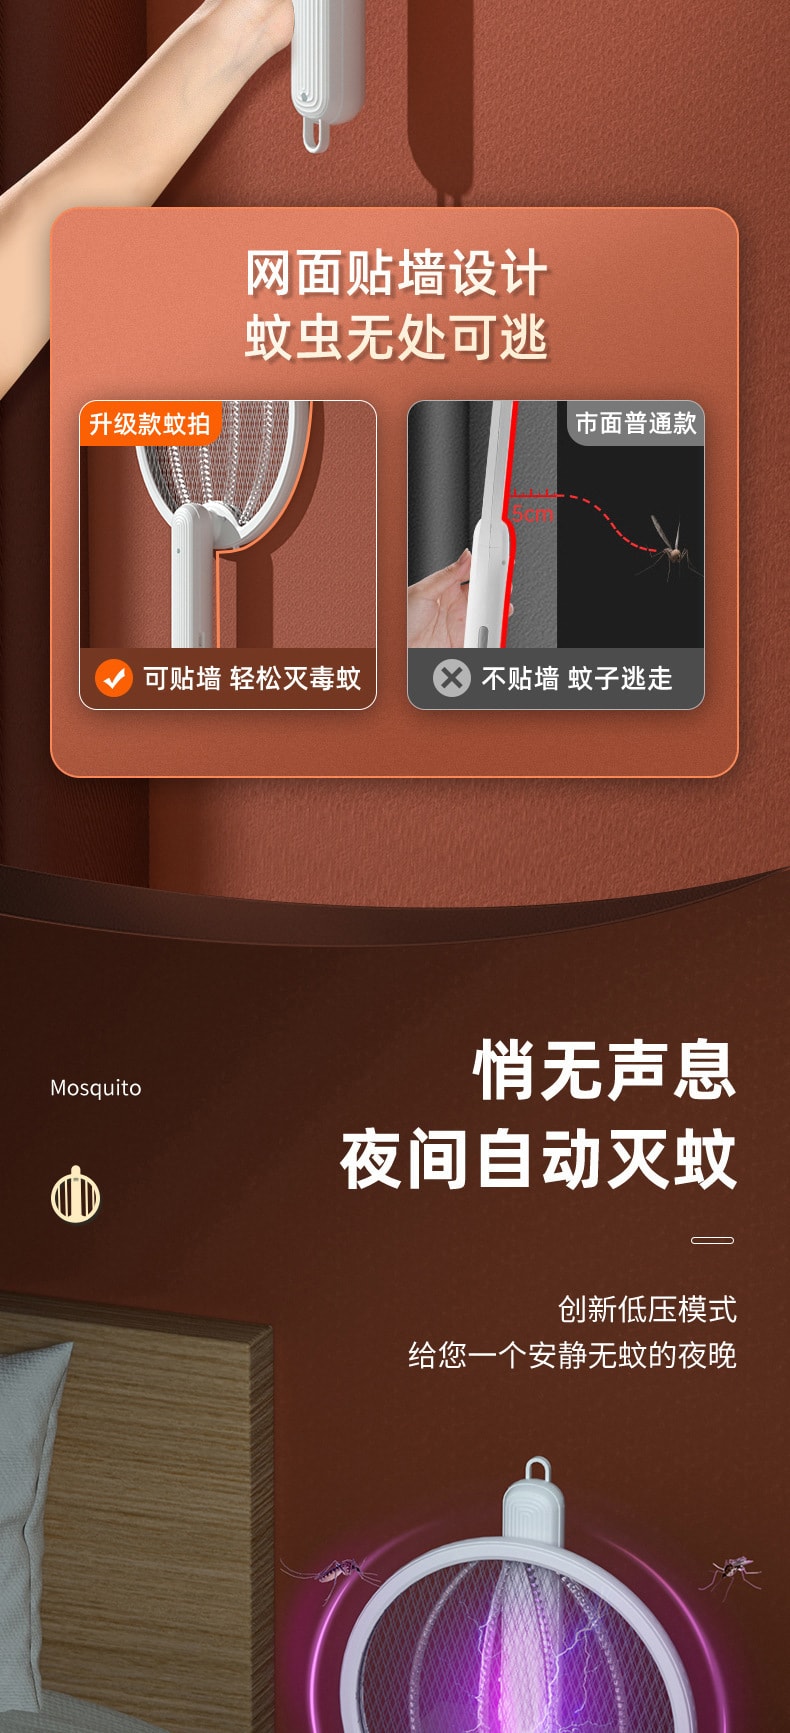 中國 電蚊拍 折疊驅蚊 貼合牆面USB 手持滅蚊拍+桌面驅蚊燈 1枚 白色